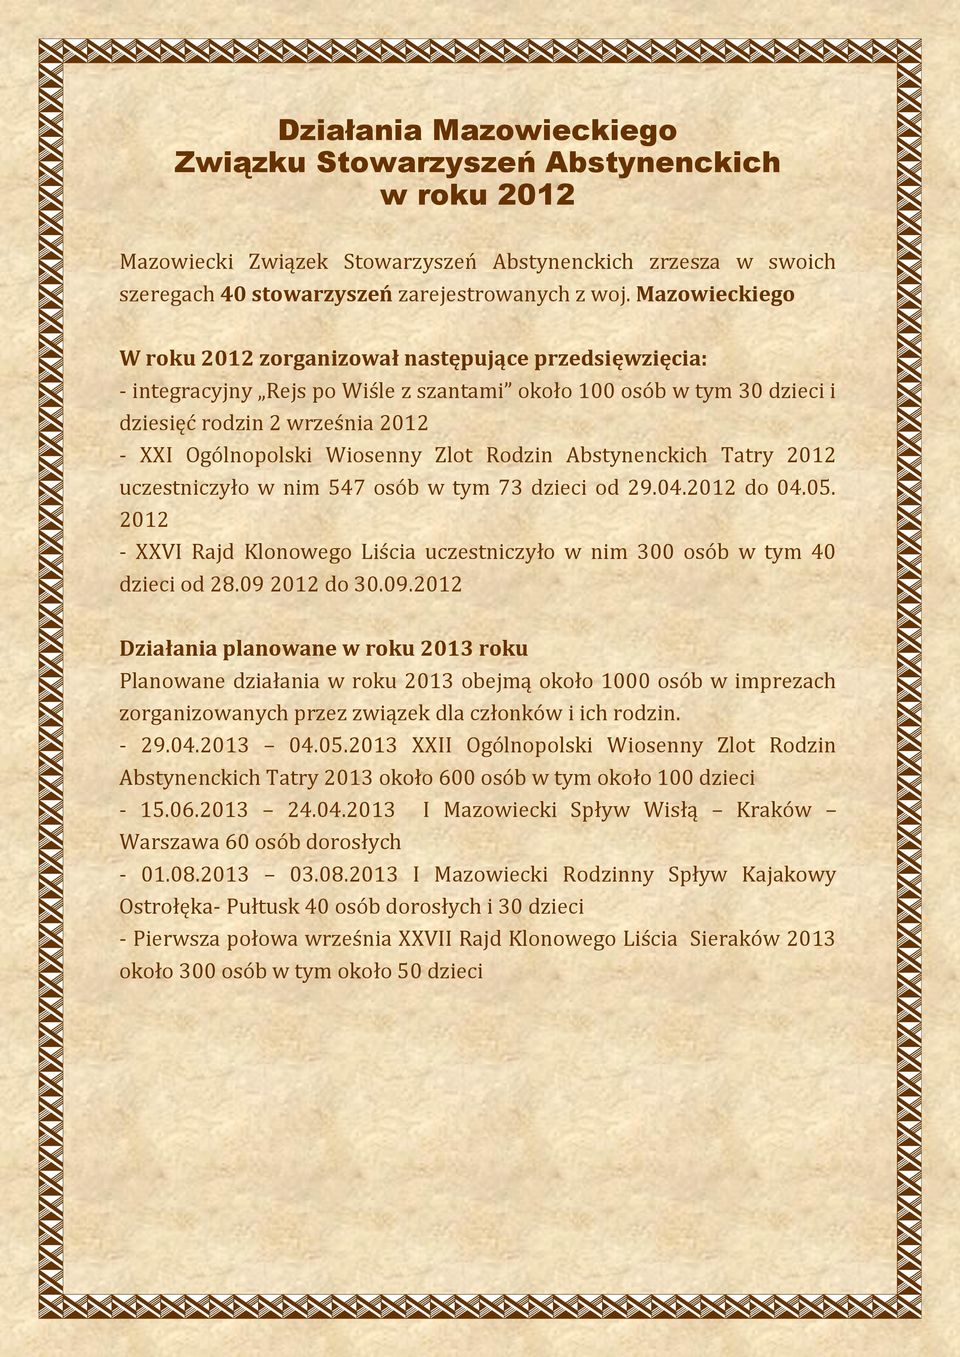 Wiosenny Zlot Rodzin Abstynenckich Tatry 2012 uczestniczyło w nim 547 osób w tym 73 dzieci od 29.04.2012 do 04.05. 2012 - XXVI Rajd Klonowego Liścia uczestniczyło w nim 300 osób w tym 40 dzieci od 28.